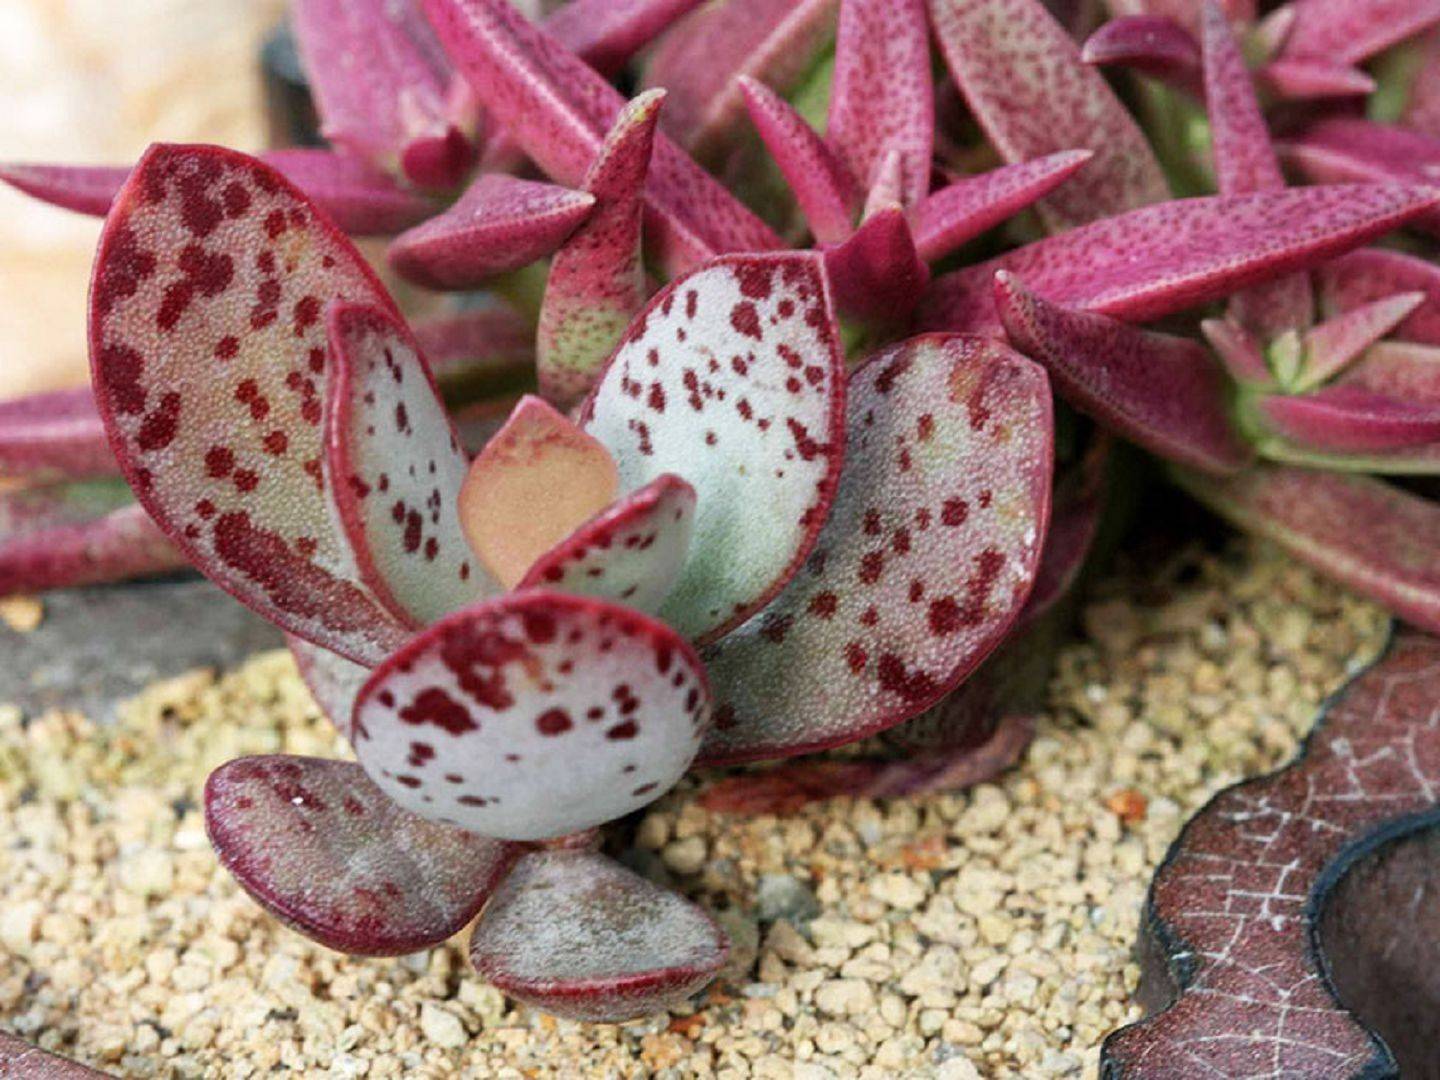 Неприхотливый адромискус пятнистый - комнатное растение с экзотическими листьями, прекрасный экземпляр для суккулентных садиков.